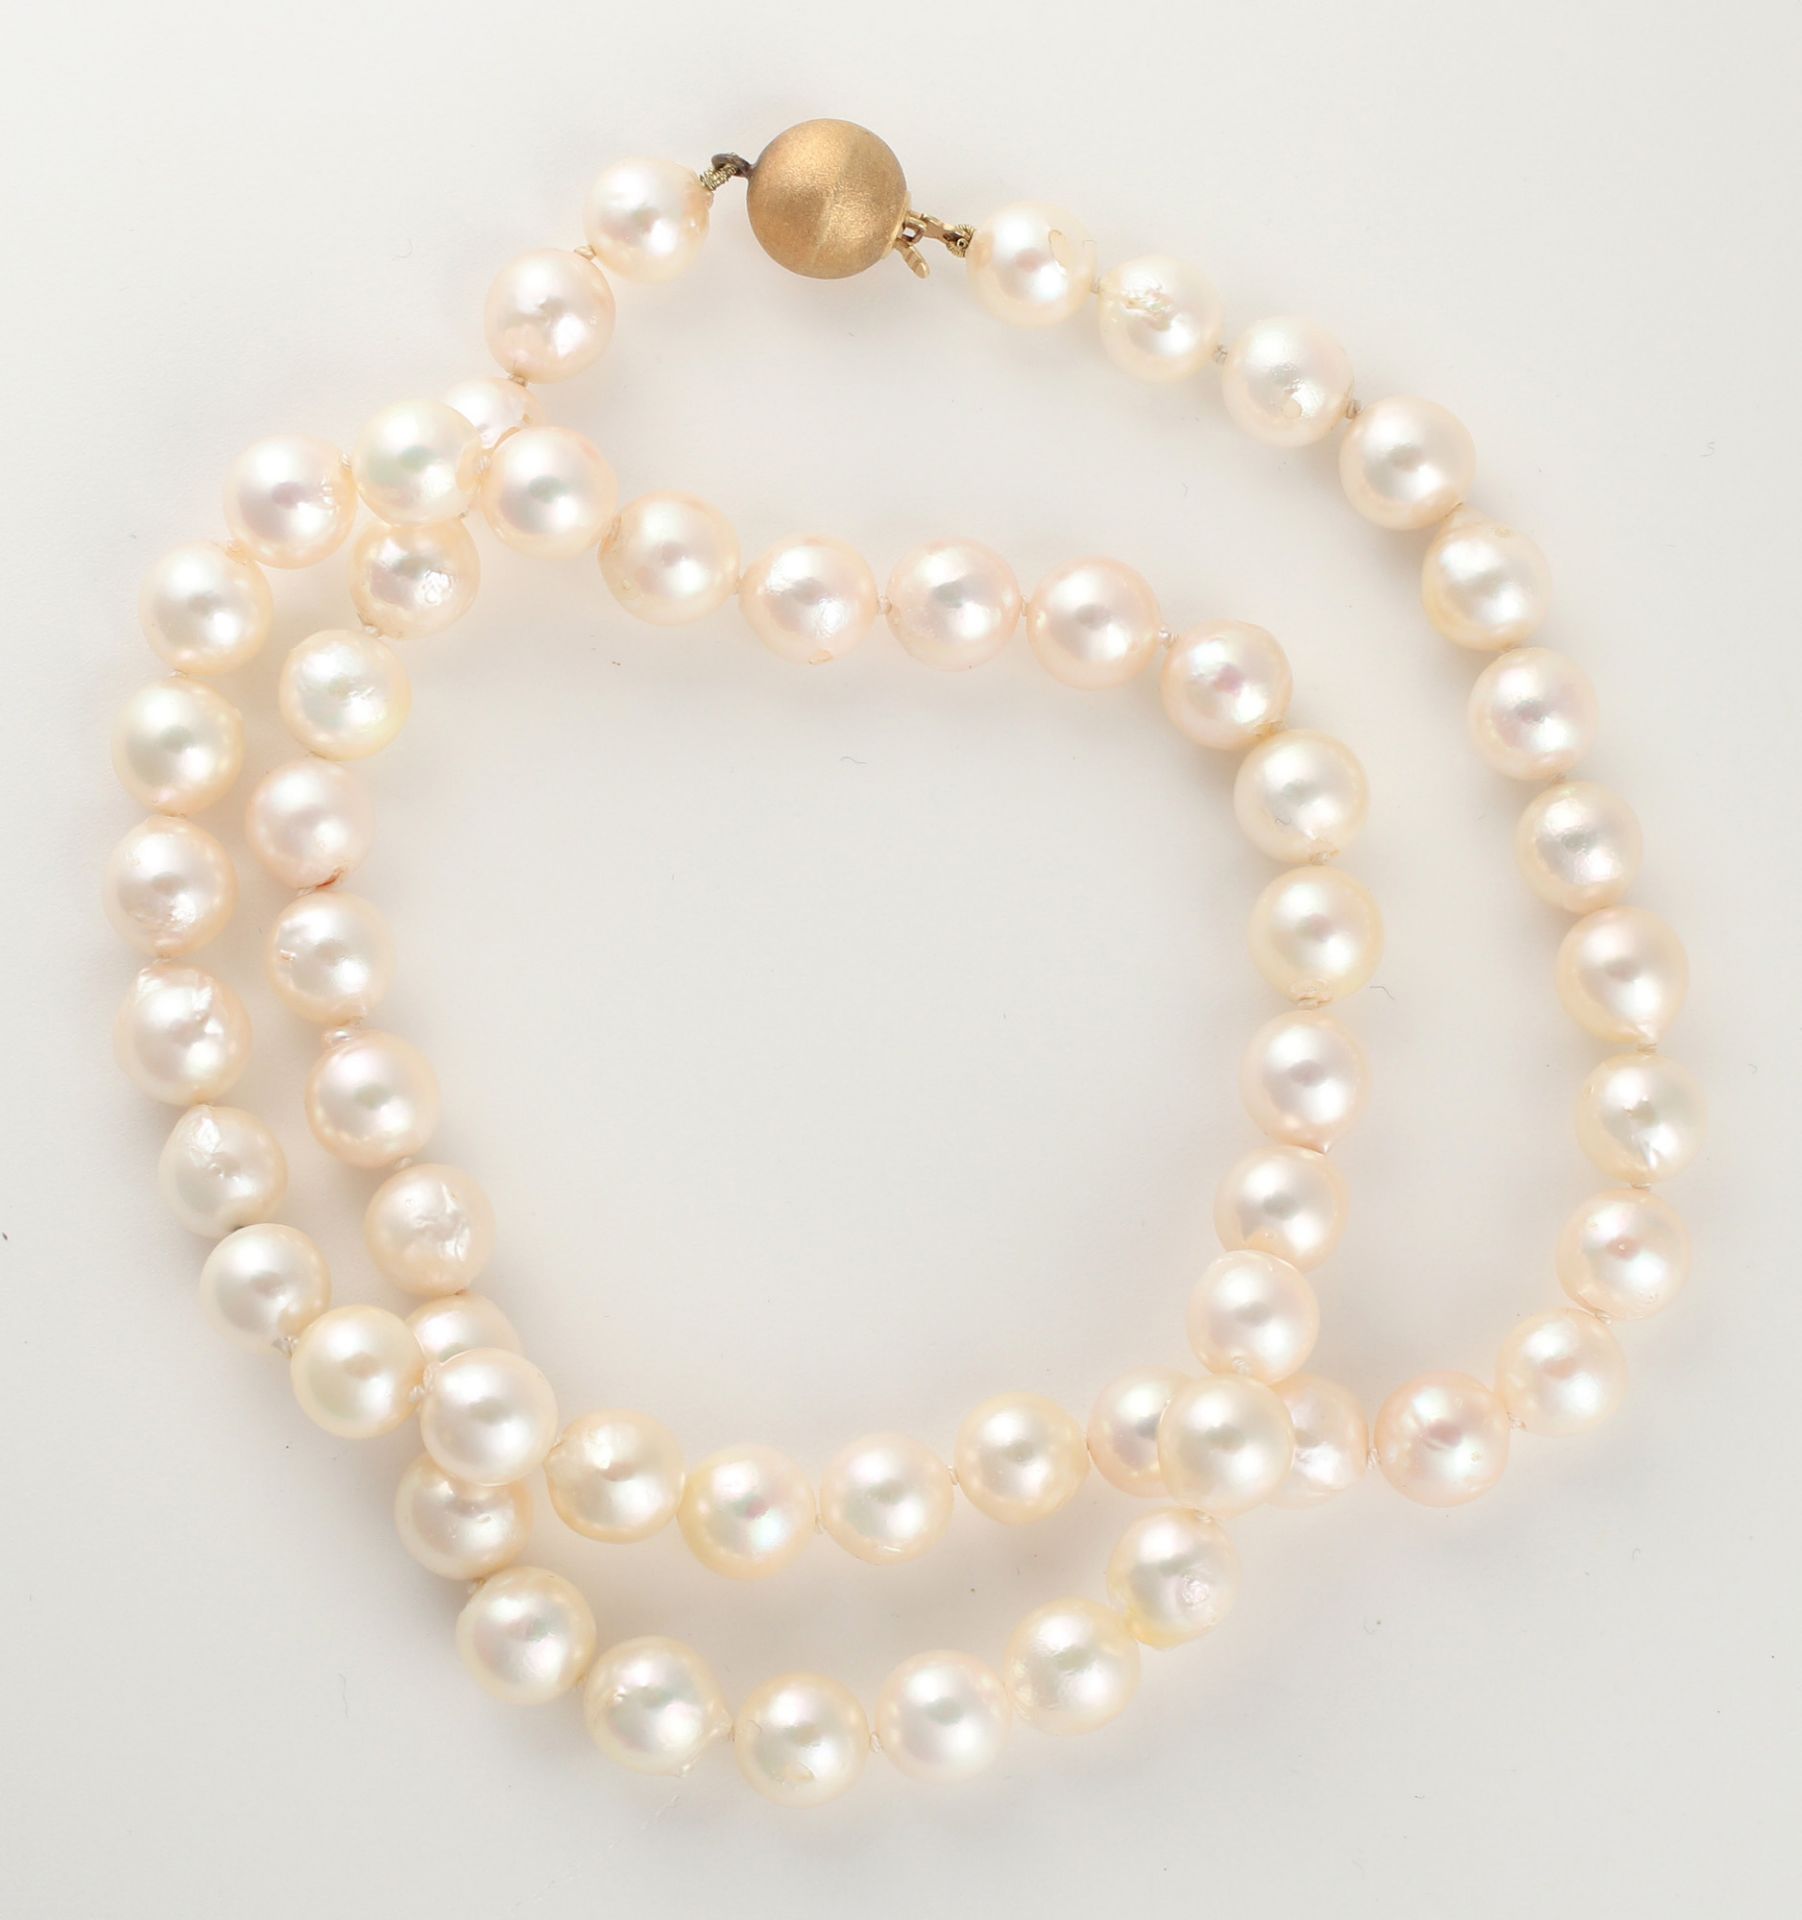 Zuchtperlcollier, aus 57 Perlen